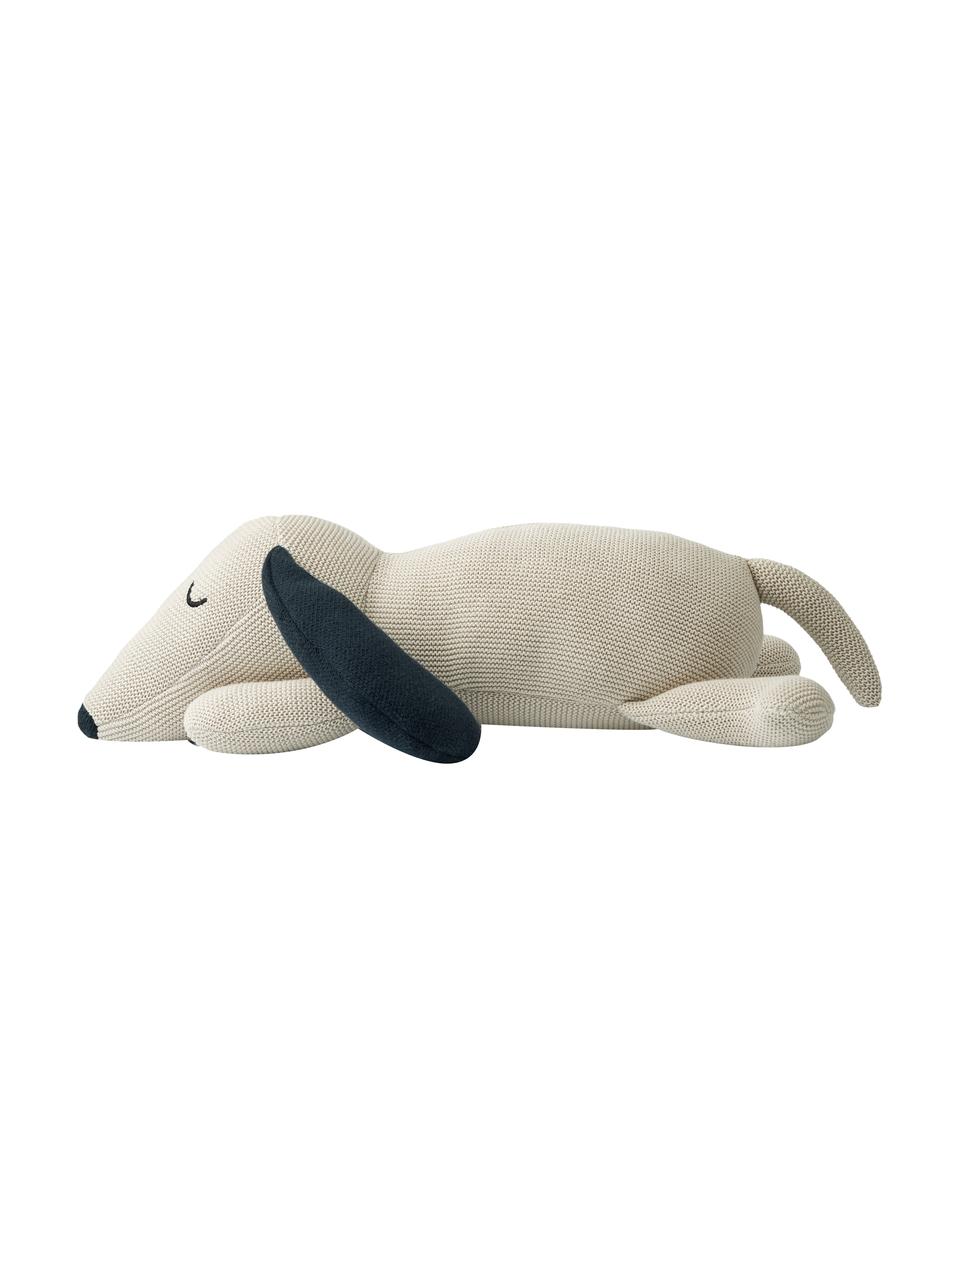 Przytulanka Daniel the Dog, Tapicerka: 100% bawełna, Złamana biel, ciemny niebieski, S 40 x W 14 cm